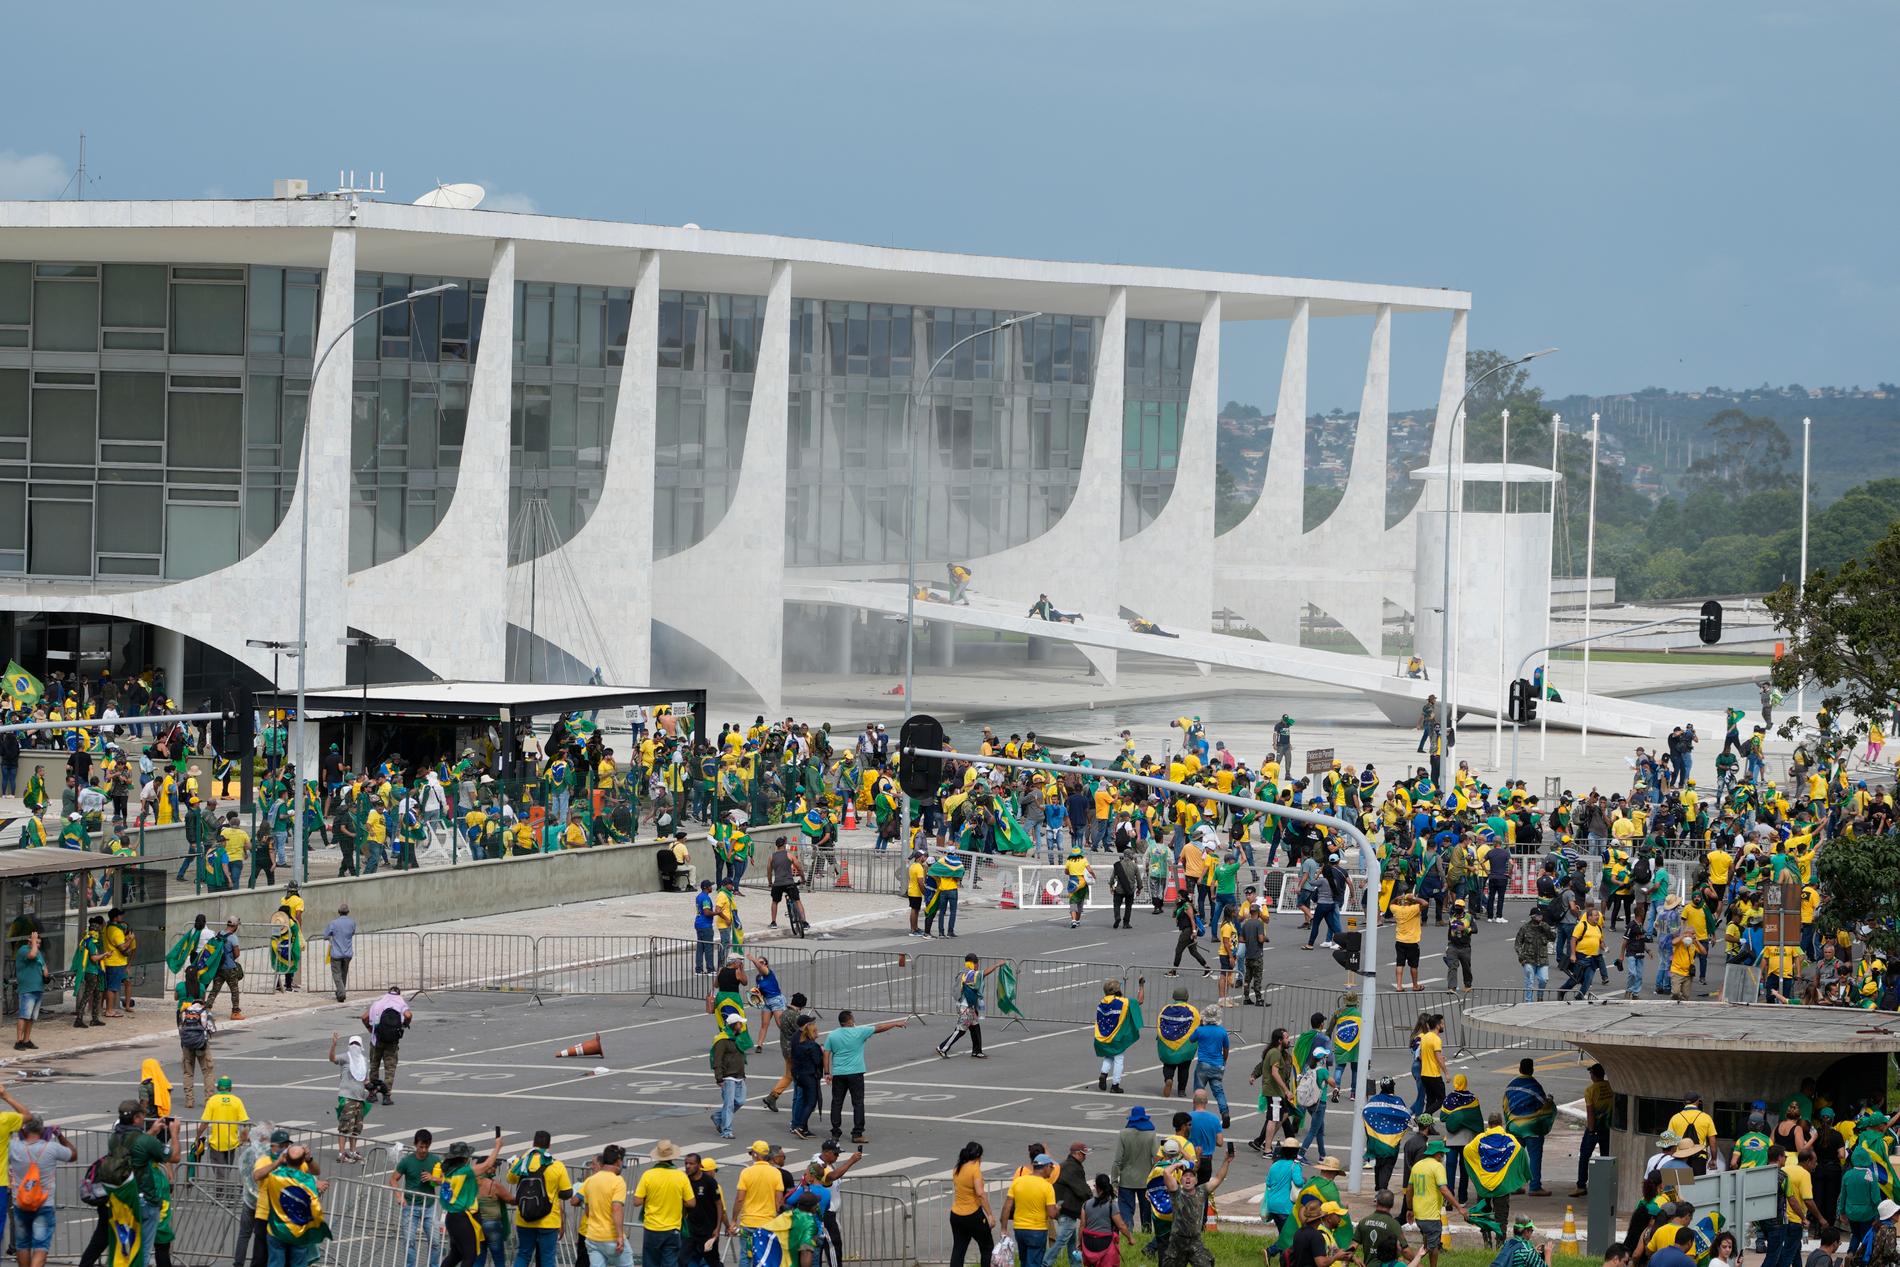 Kongressen i Brasilia stormades av anhängare till den tidigare presidenten Jair Bolsonaro.